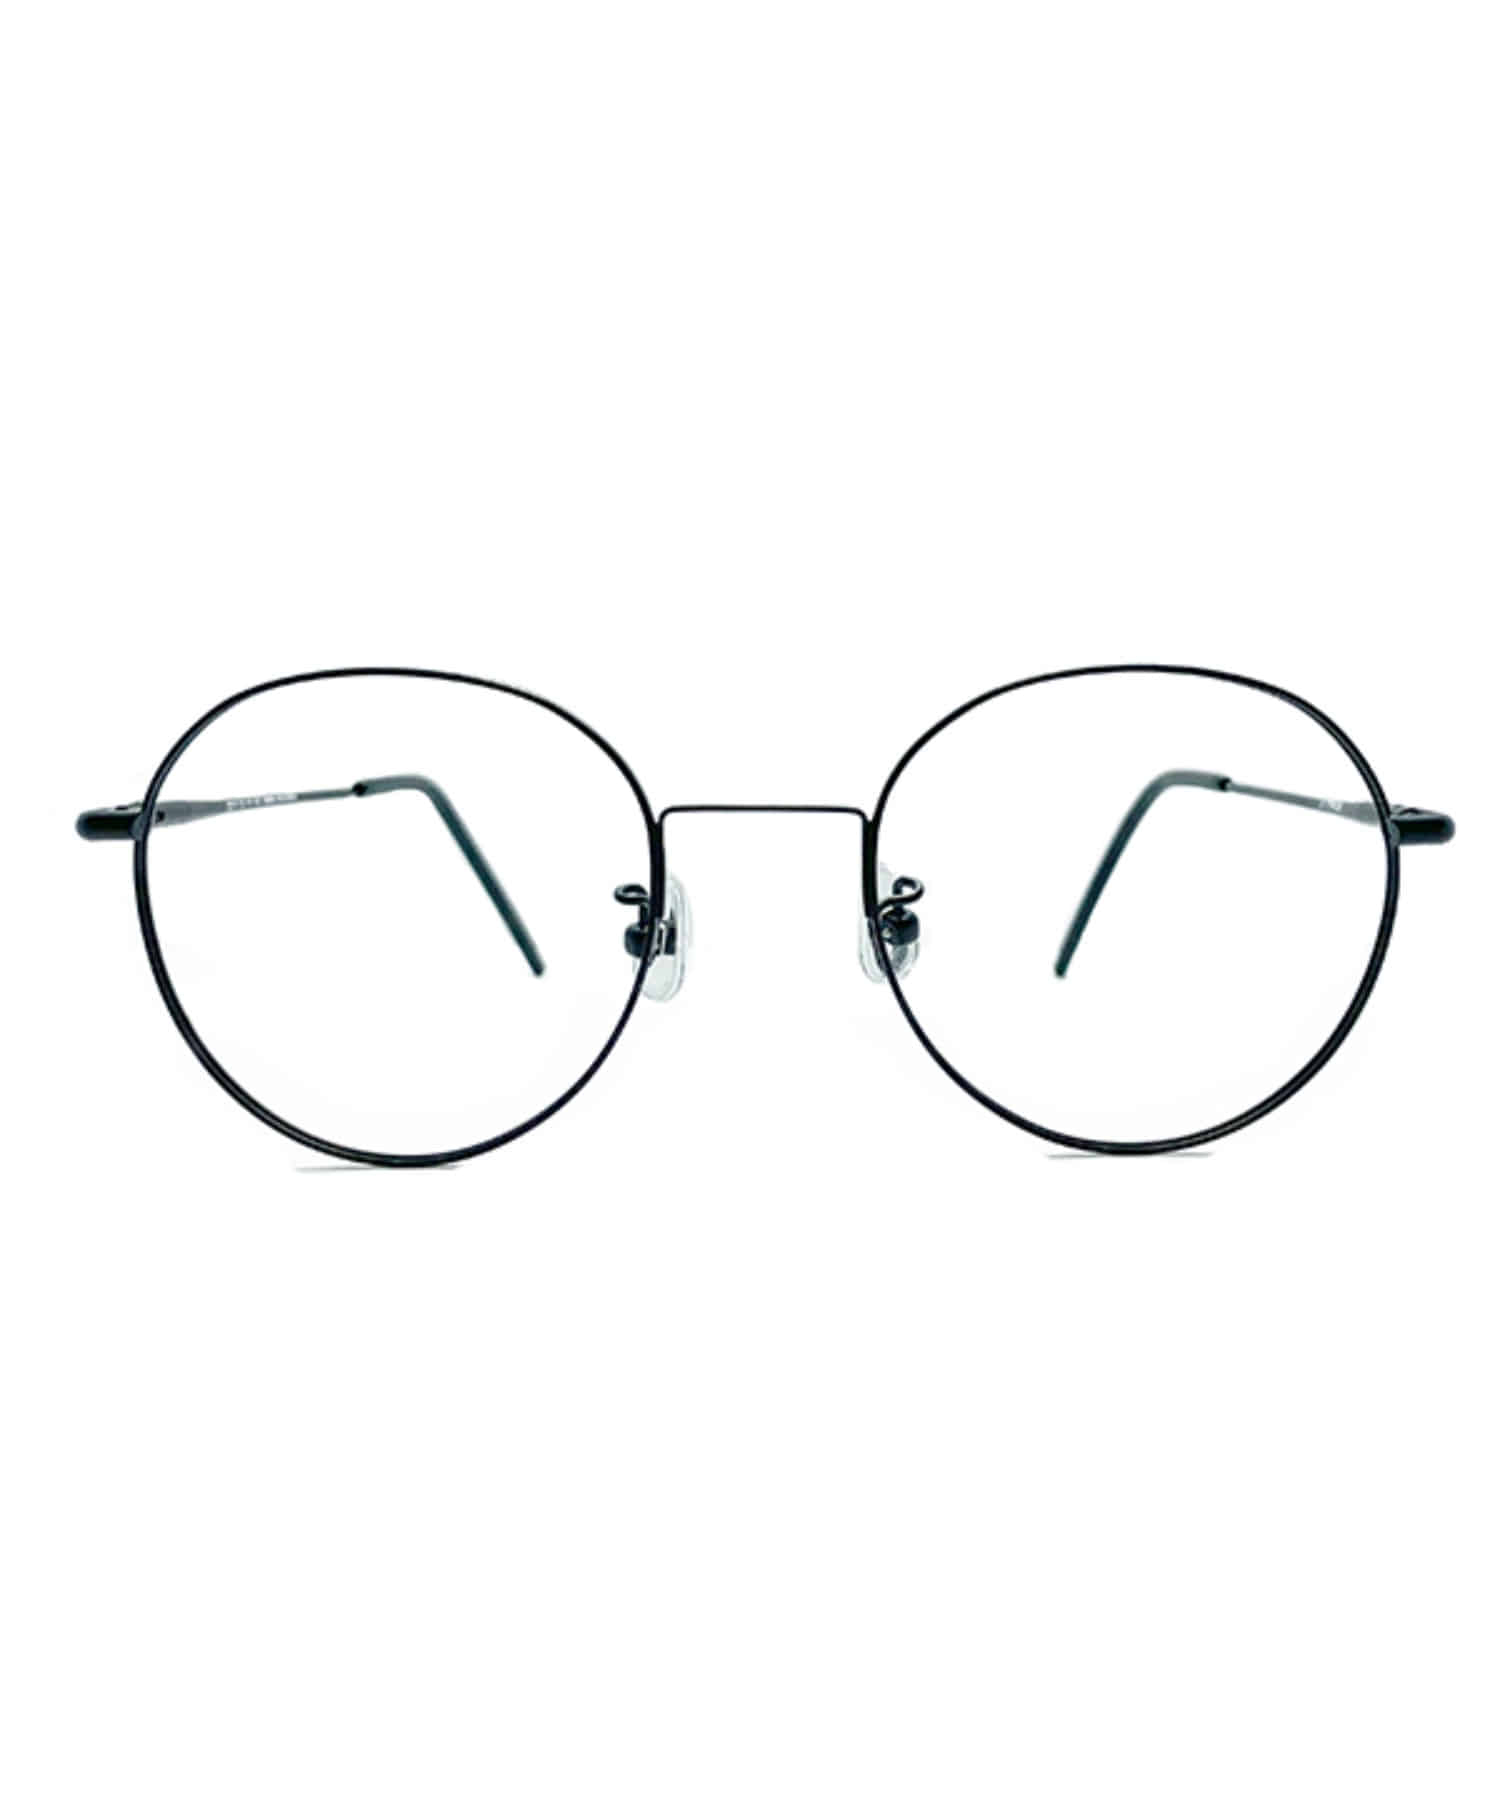 VLING 2015, Korean glasses, sunglasses, eyeglasses, glasses